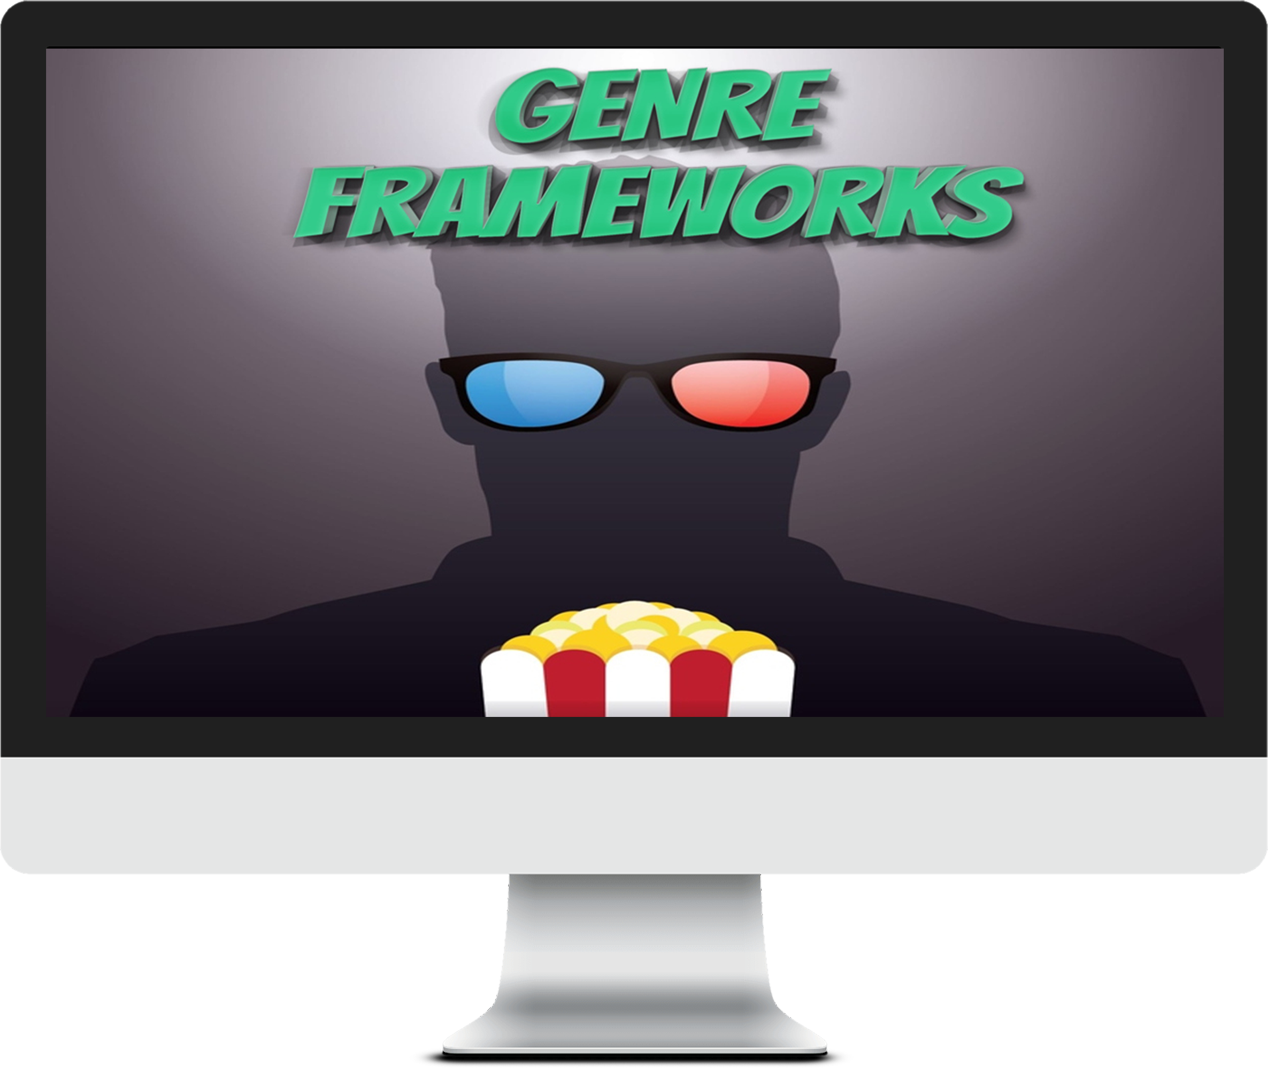 Genre Frameworks